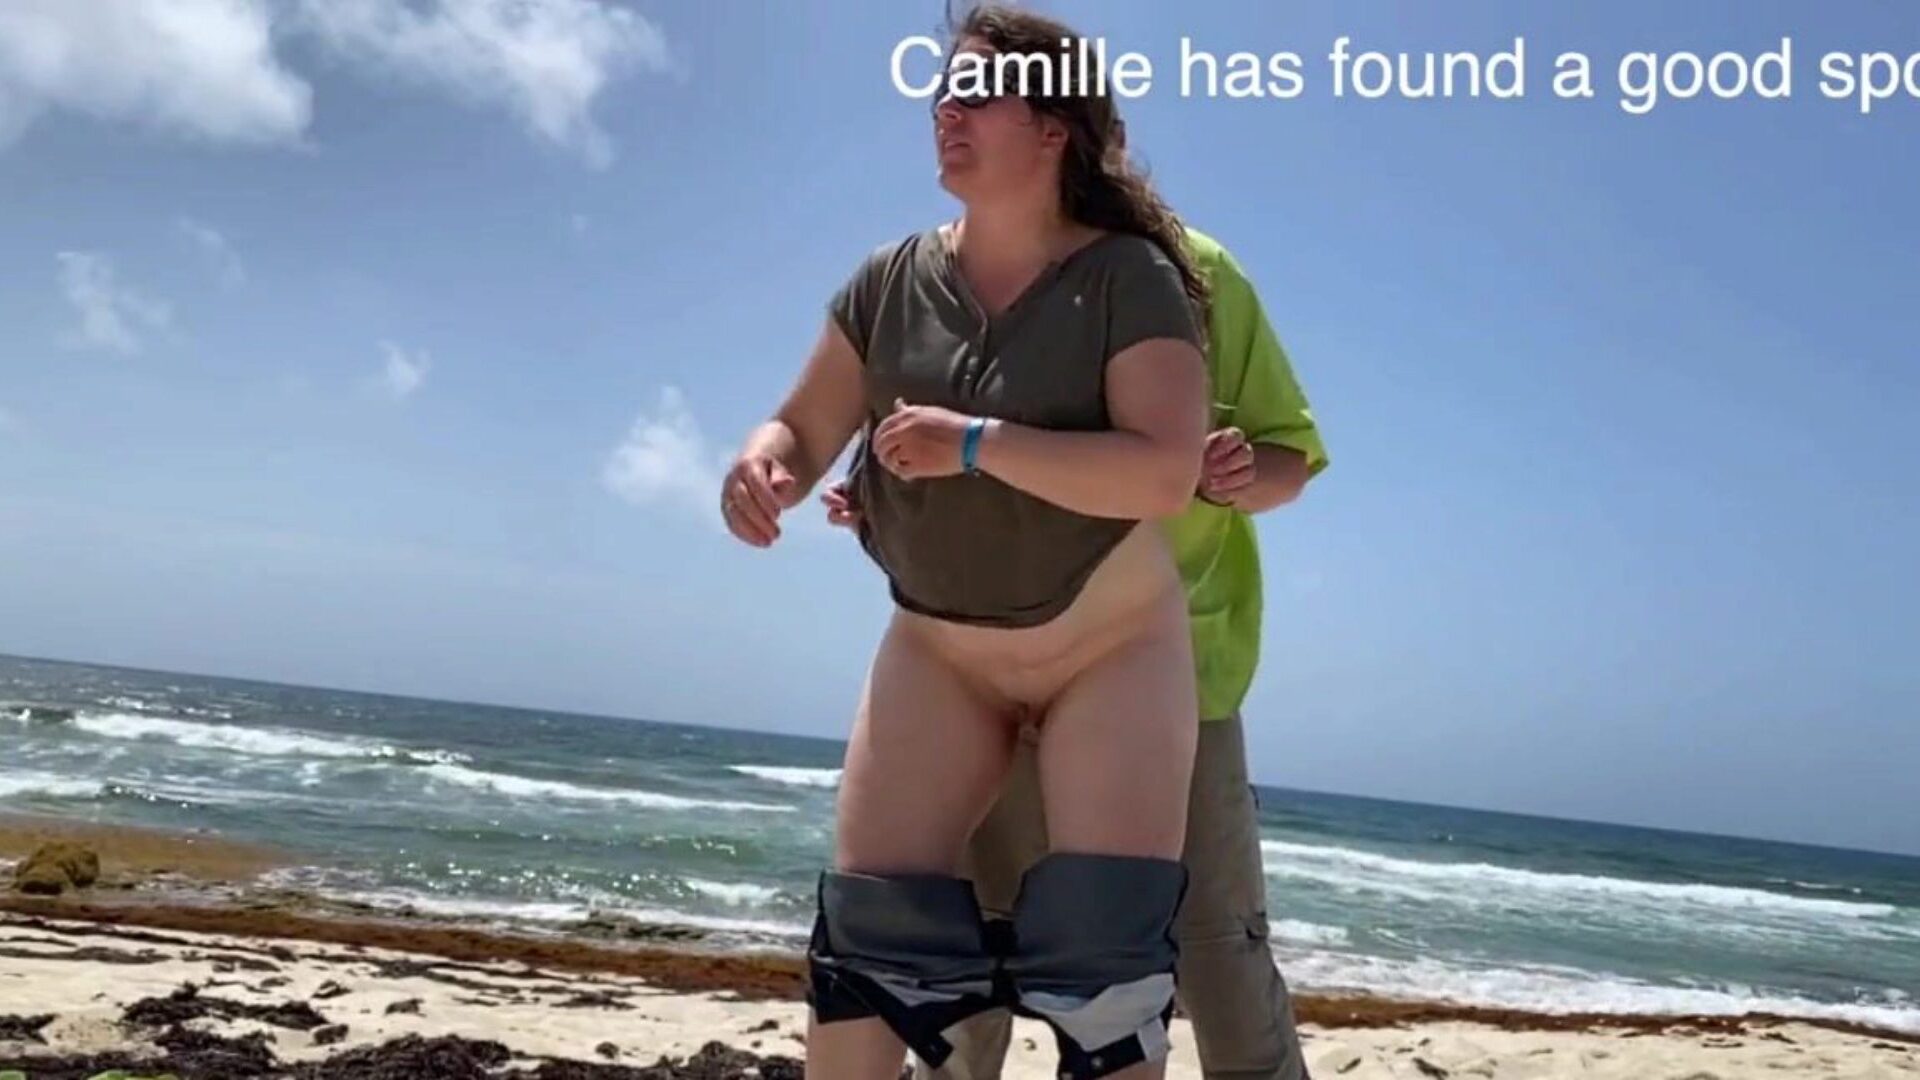 camille je gledala kako grba na plaži camille je pronašla dragocjeno mjesto, a neki su ljudi promatrali kako je bučno pa će svi gledati